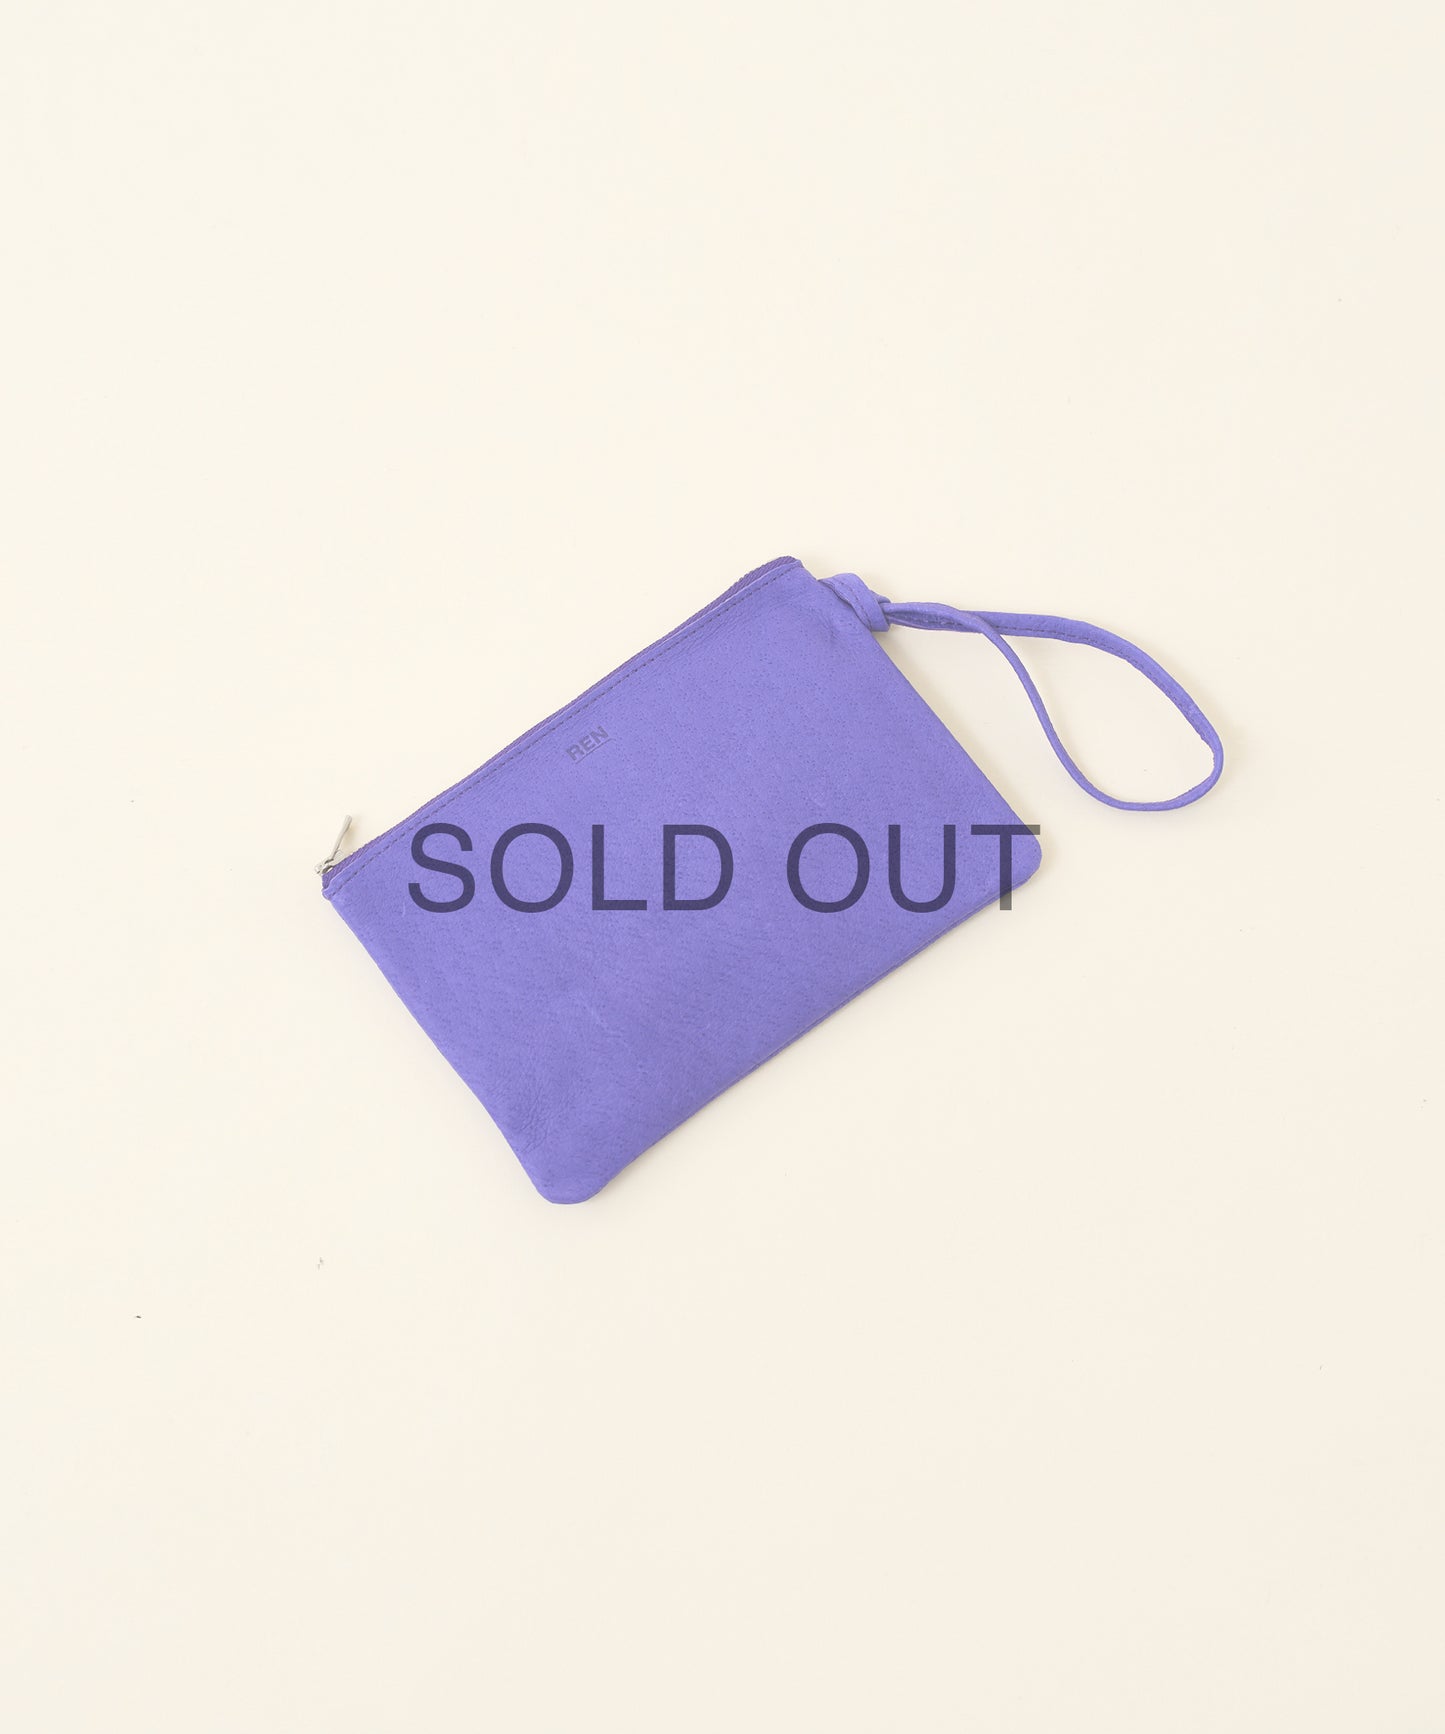 #30/ クラシックポーチ / ピッグスキン・ハリー / bright purple, sold out